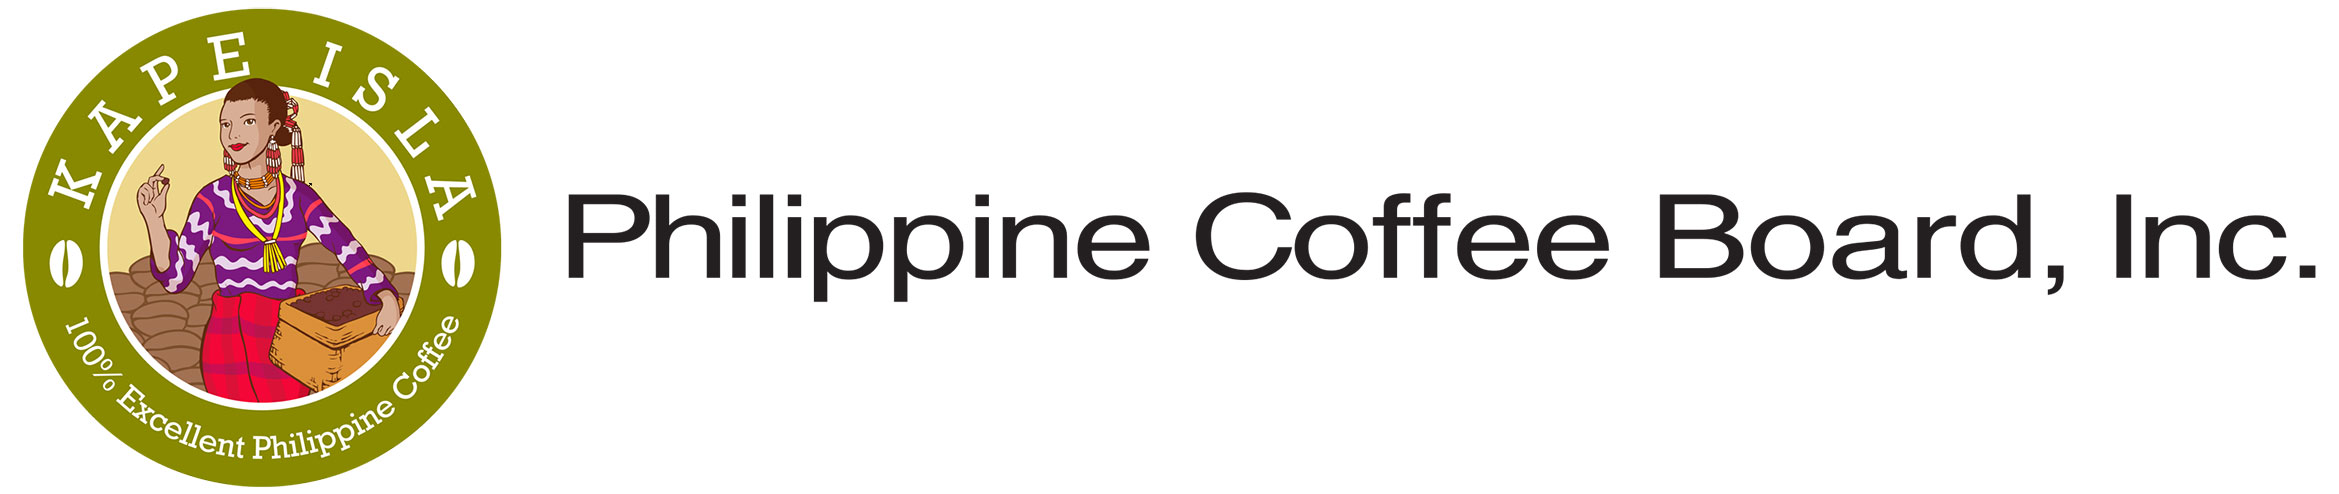 Philippine Coffee Board